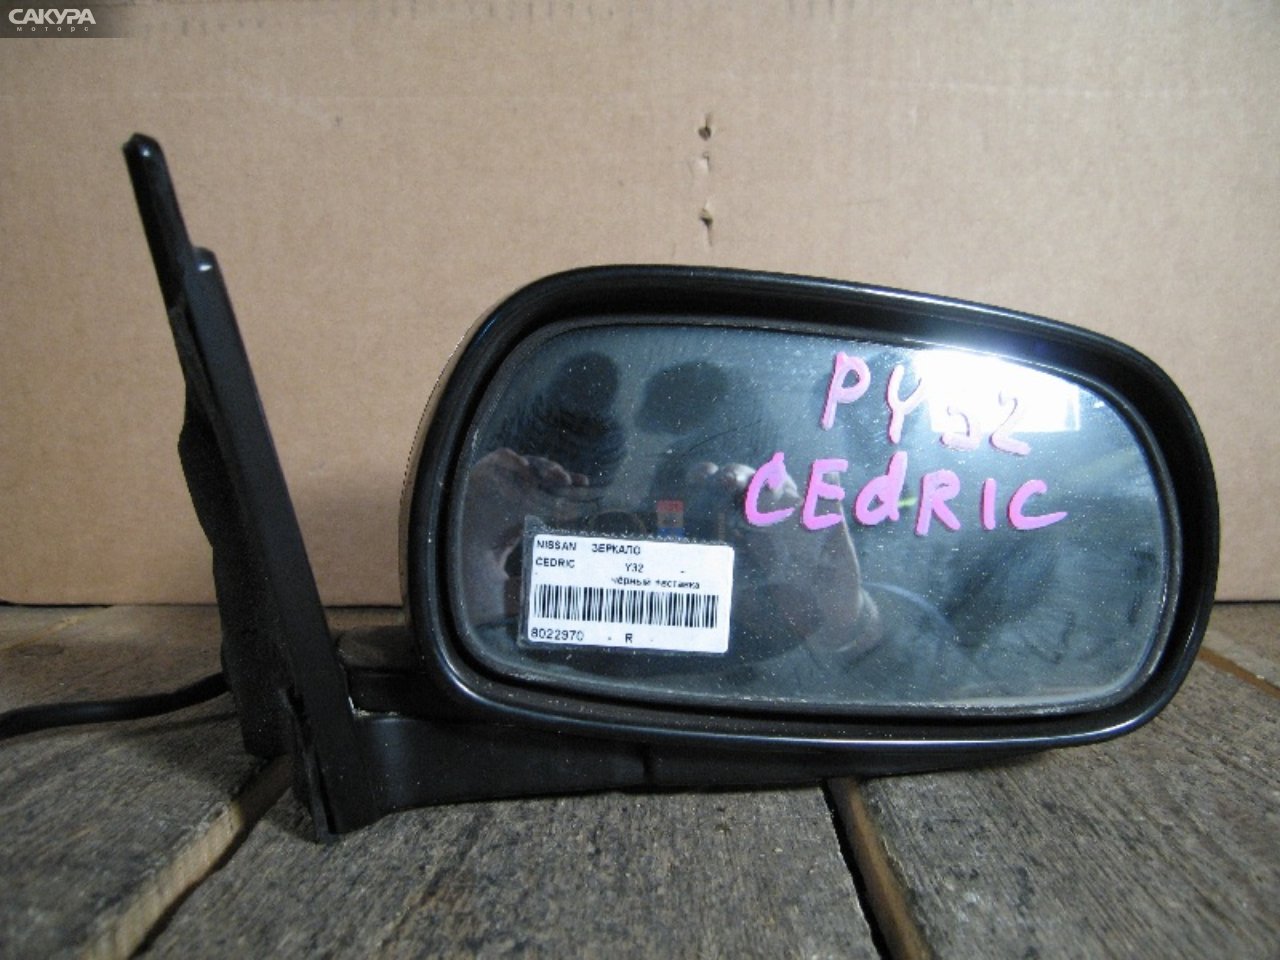 Зеркало боковое правое Nissan Cedric Y32: купить в Сакура Абакан.